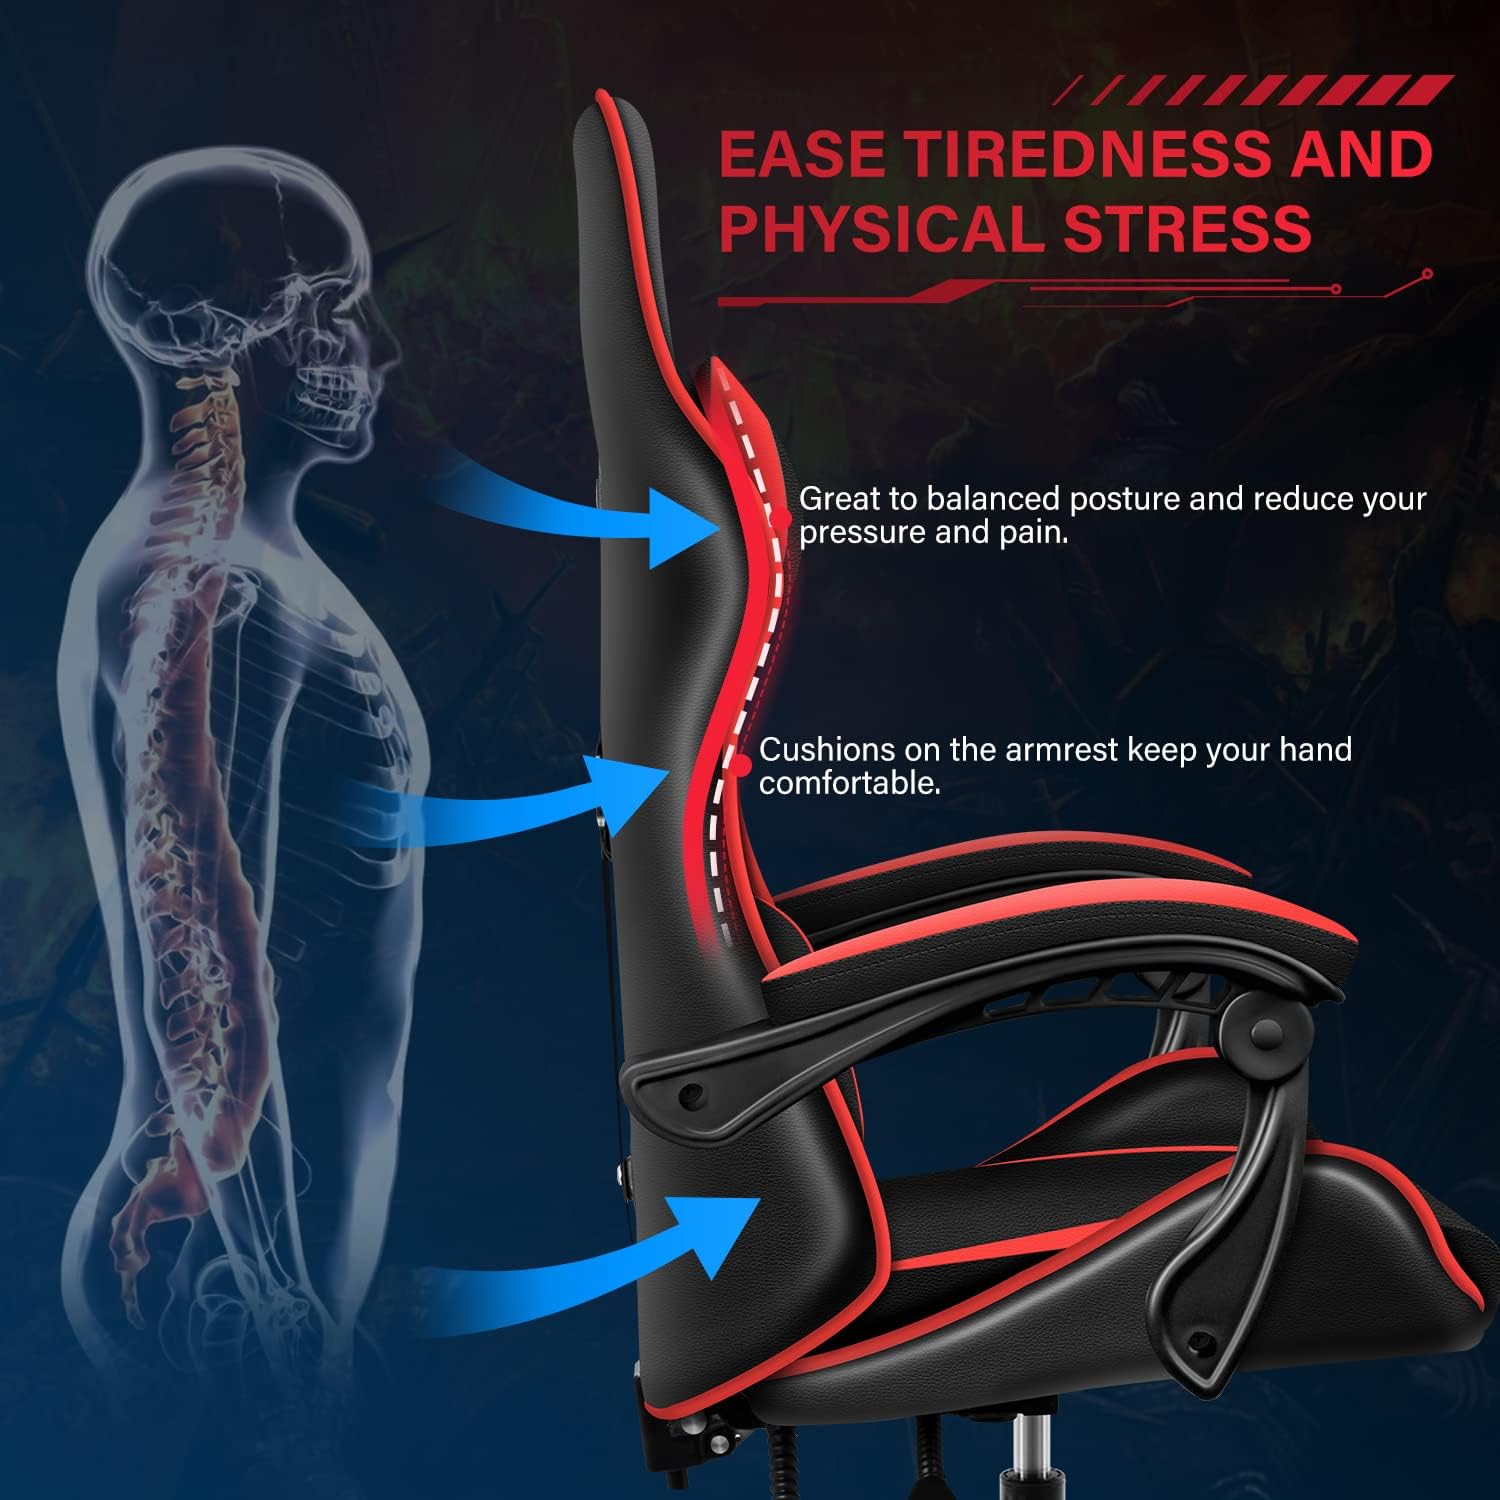 Respaldo ergonómico y altura del asiento reclinable giratorio ajustable para